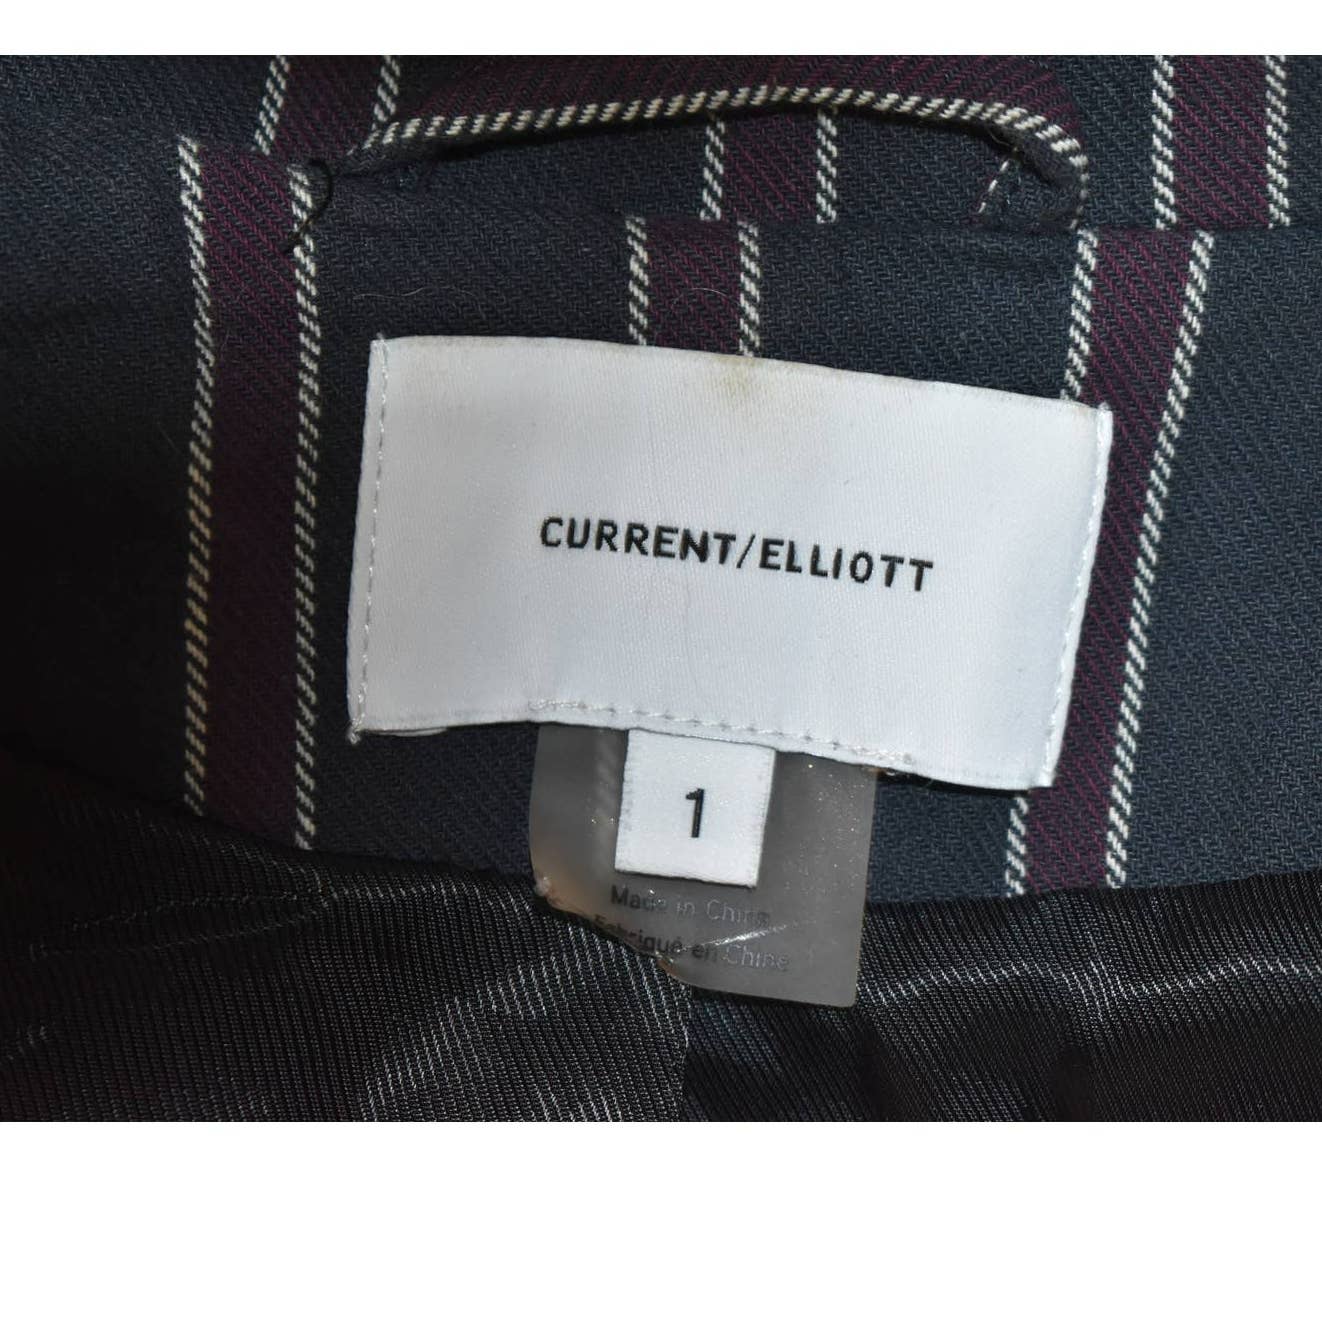 Current/Elliott Black Burgundy Striped Blazer - 1 (4)